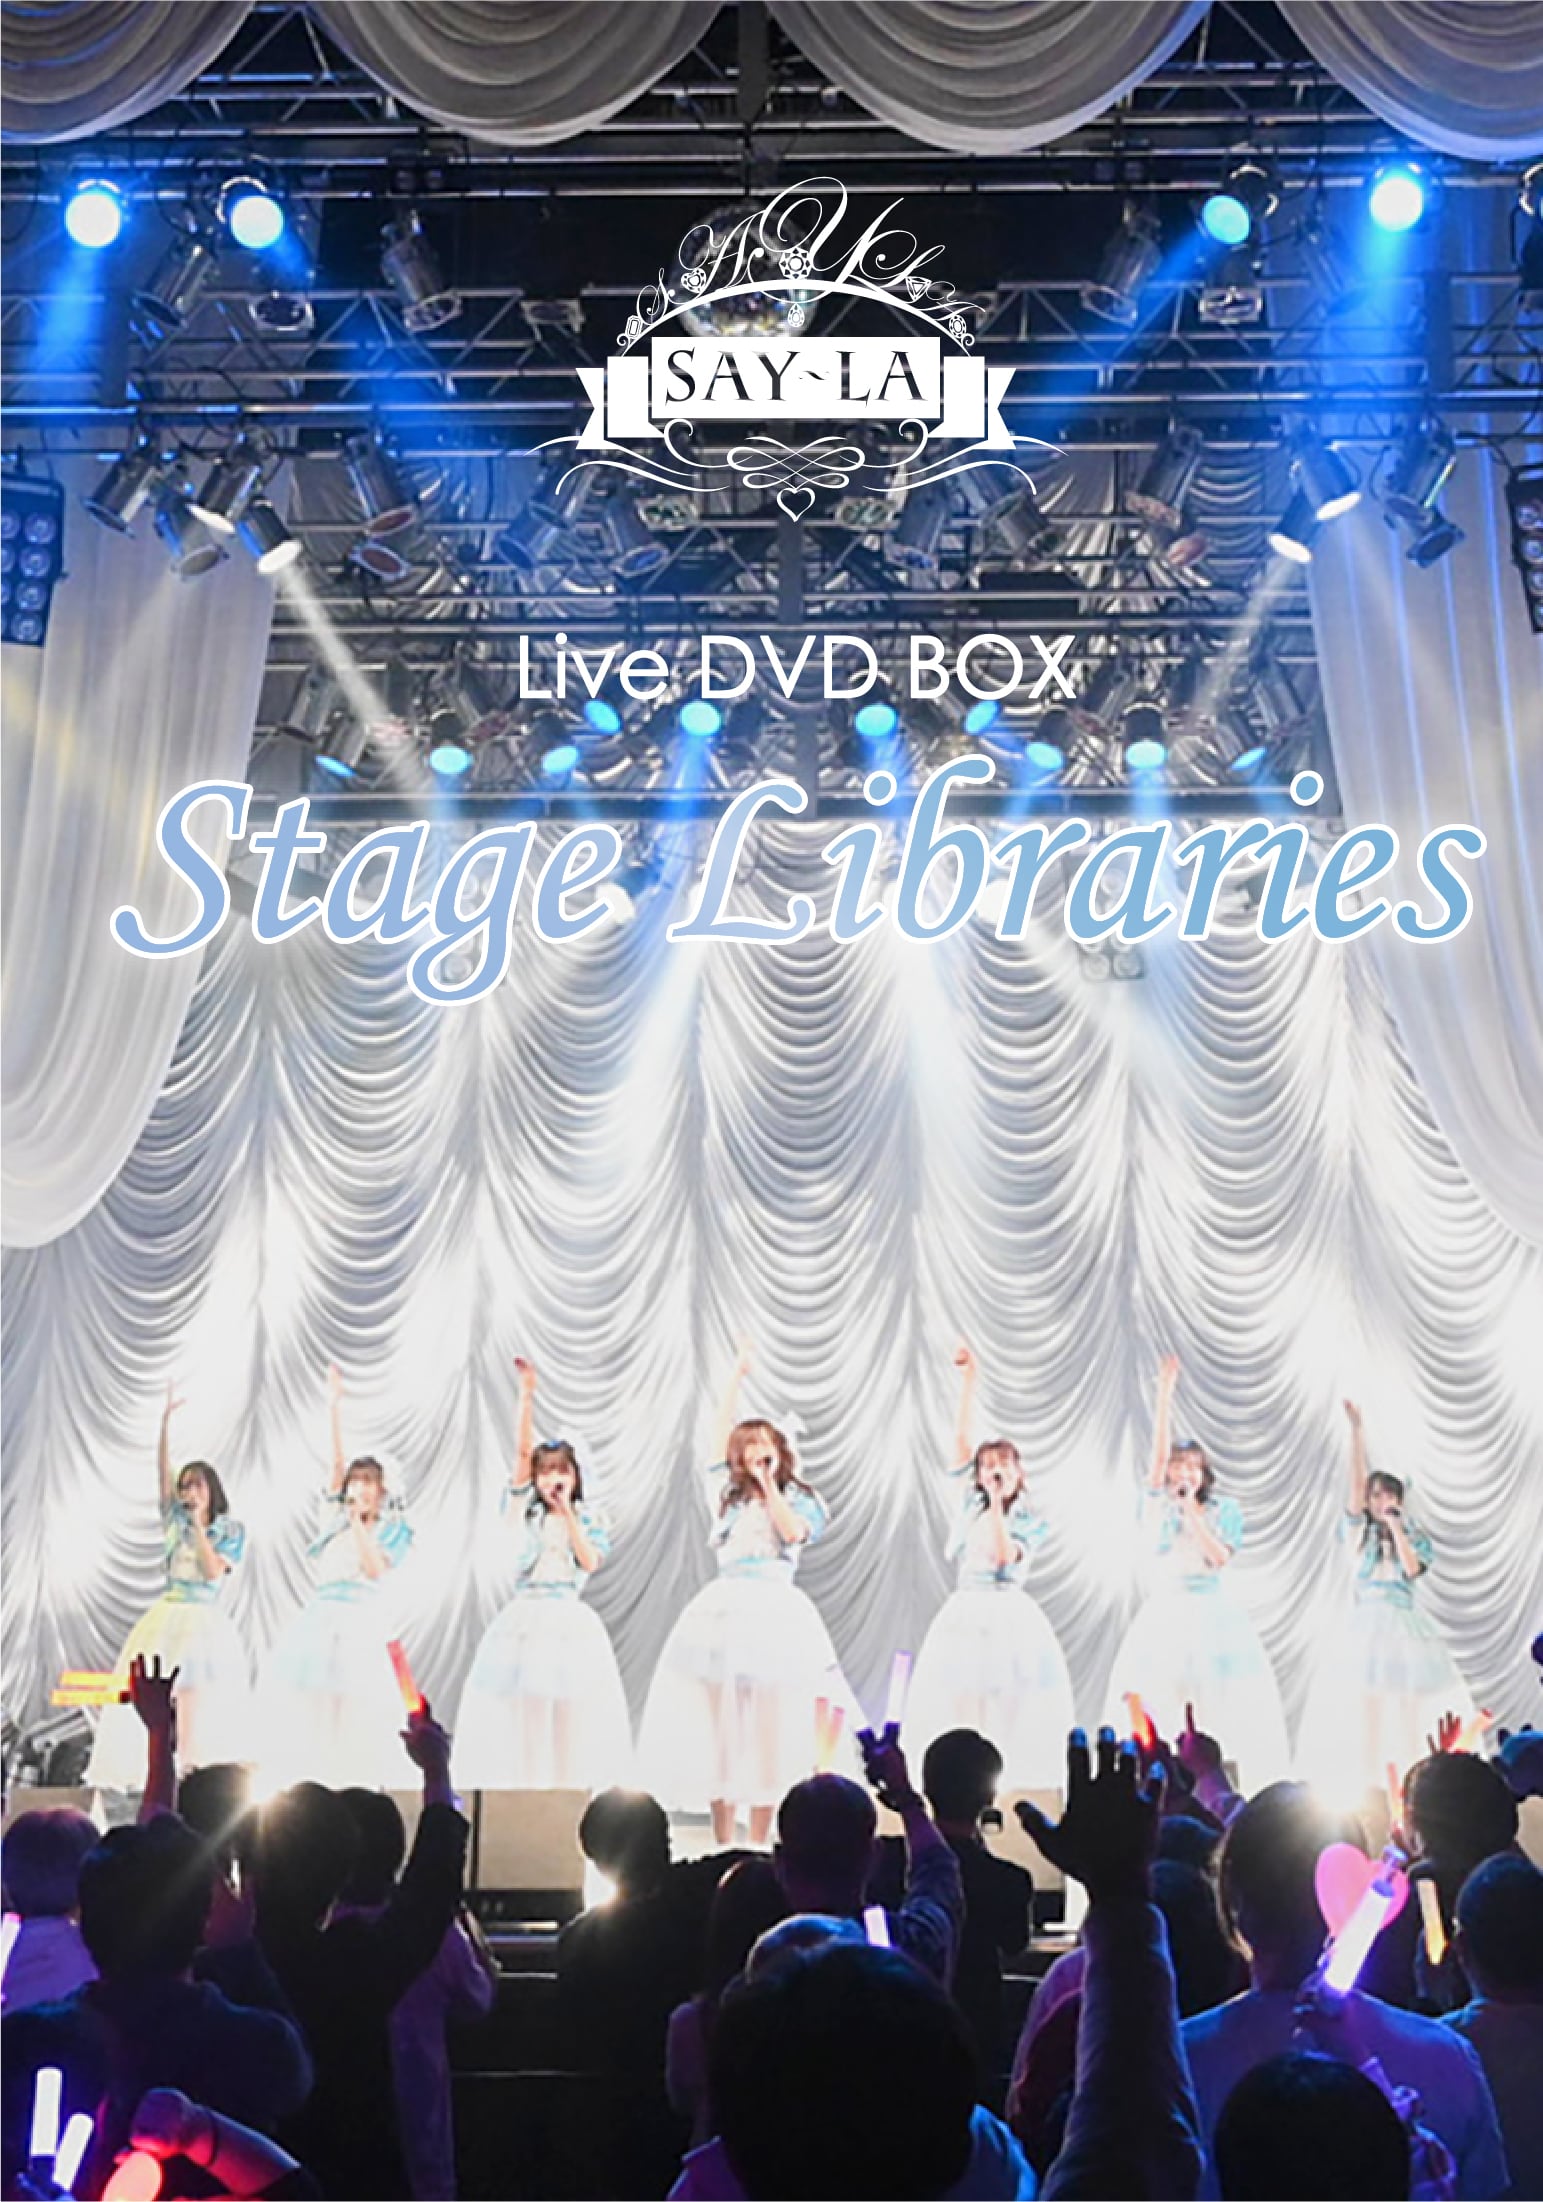 3rd A'LIVE DVDBOX